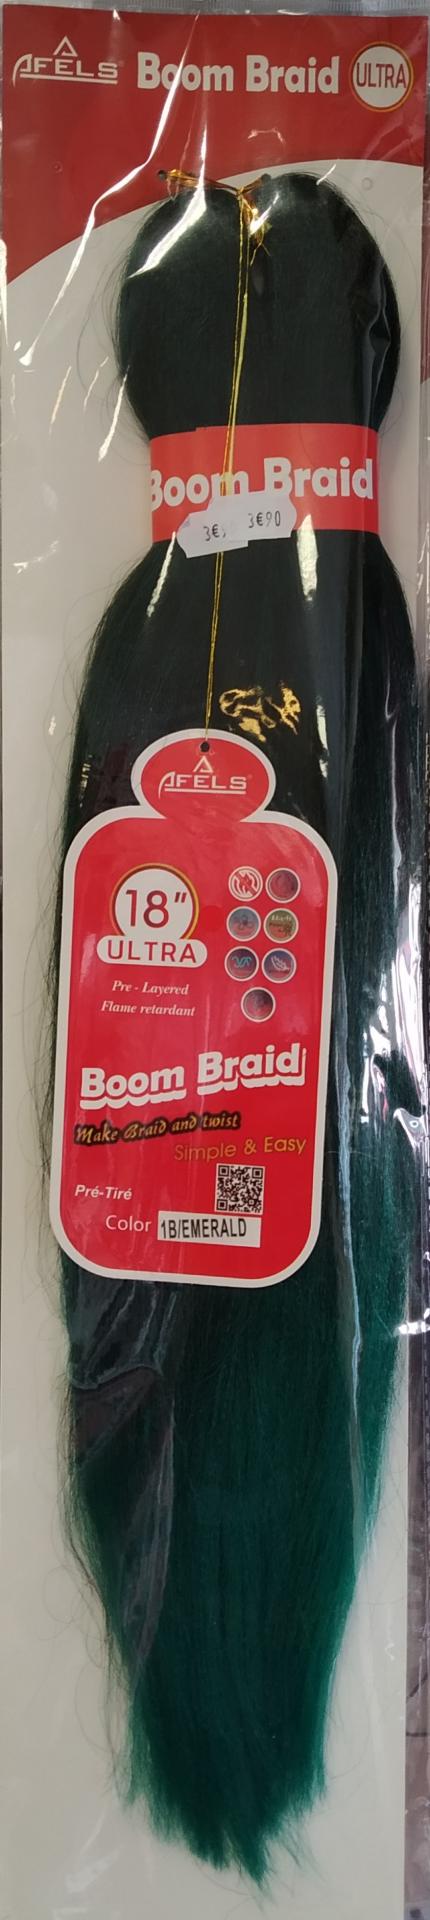 Boom braid 18